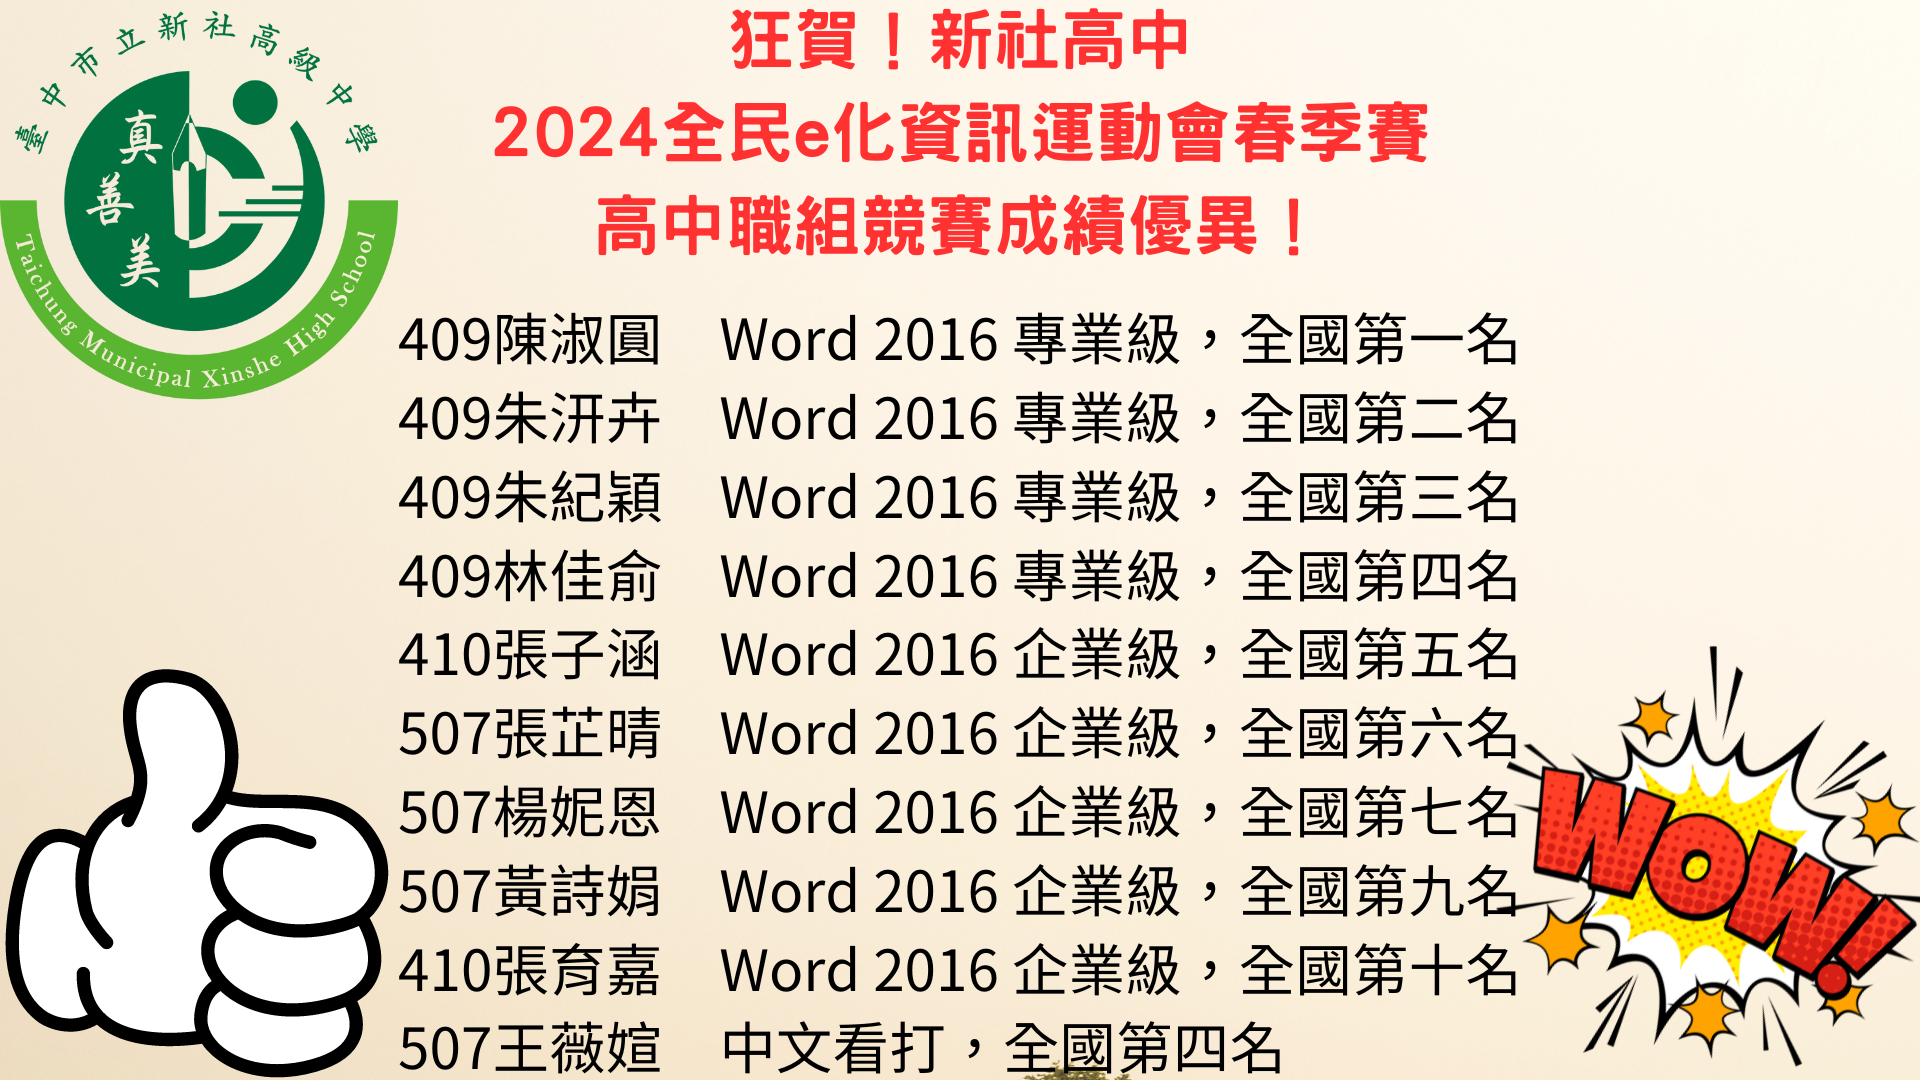 2024全民e化資訊運動會春季賽